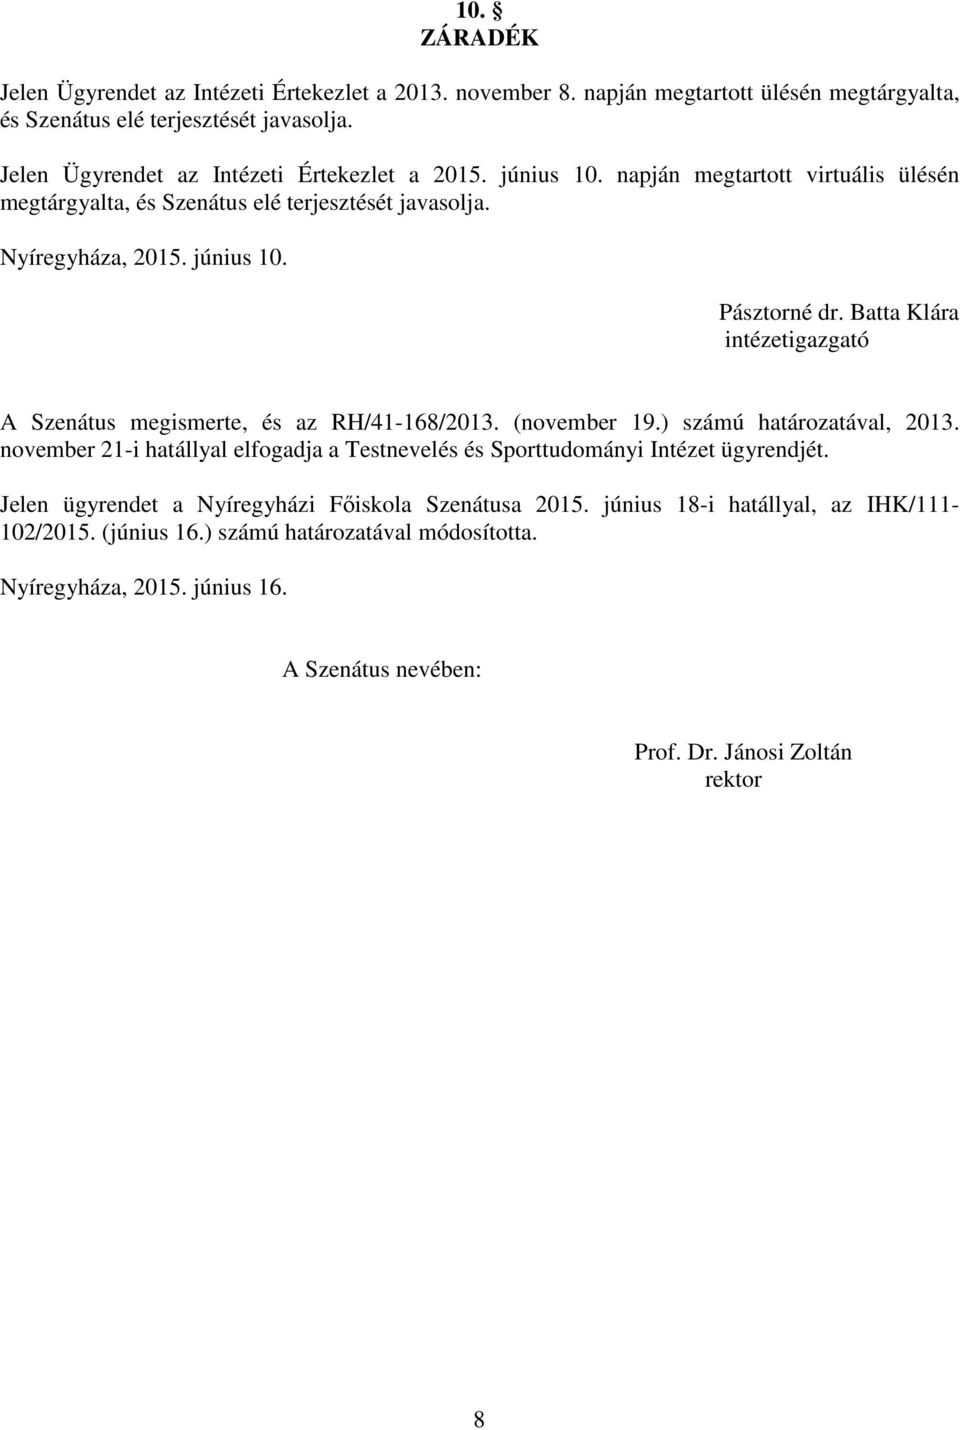 Batta Klára intézetigazgató A Szenátus megismerte, és az RH/41-168/2013. (november 19.) számú határozatával, 2013.